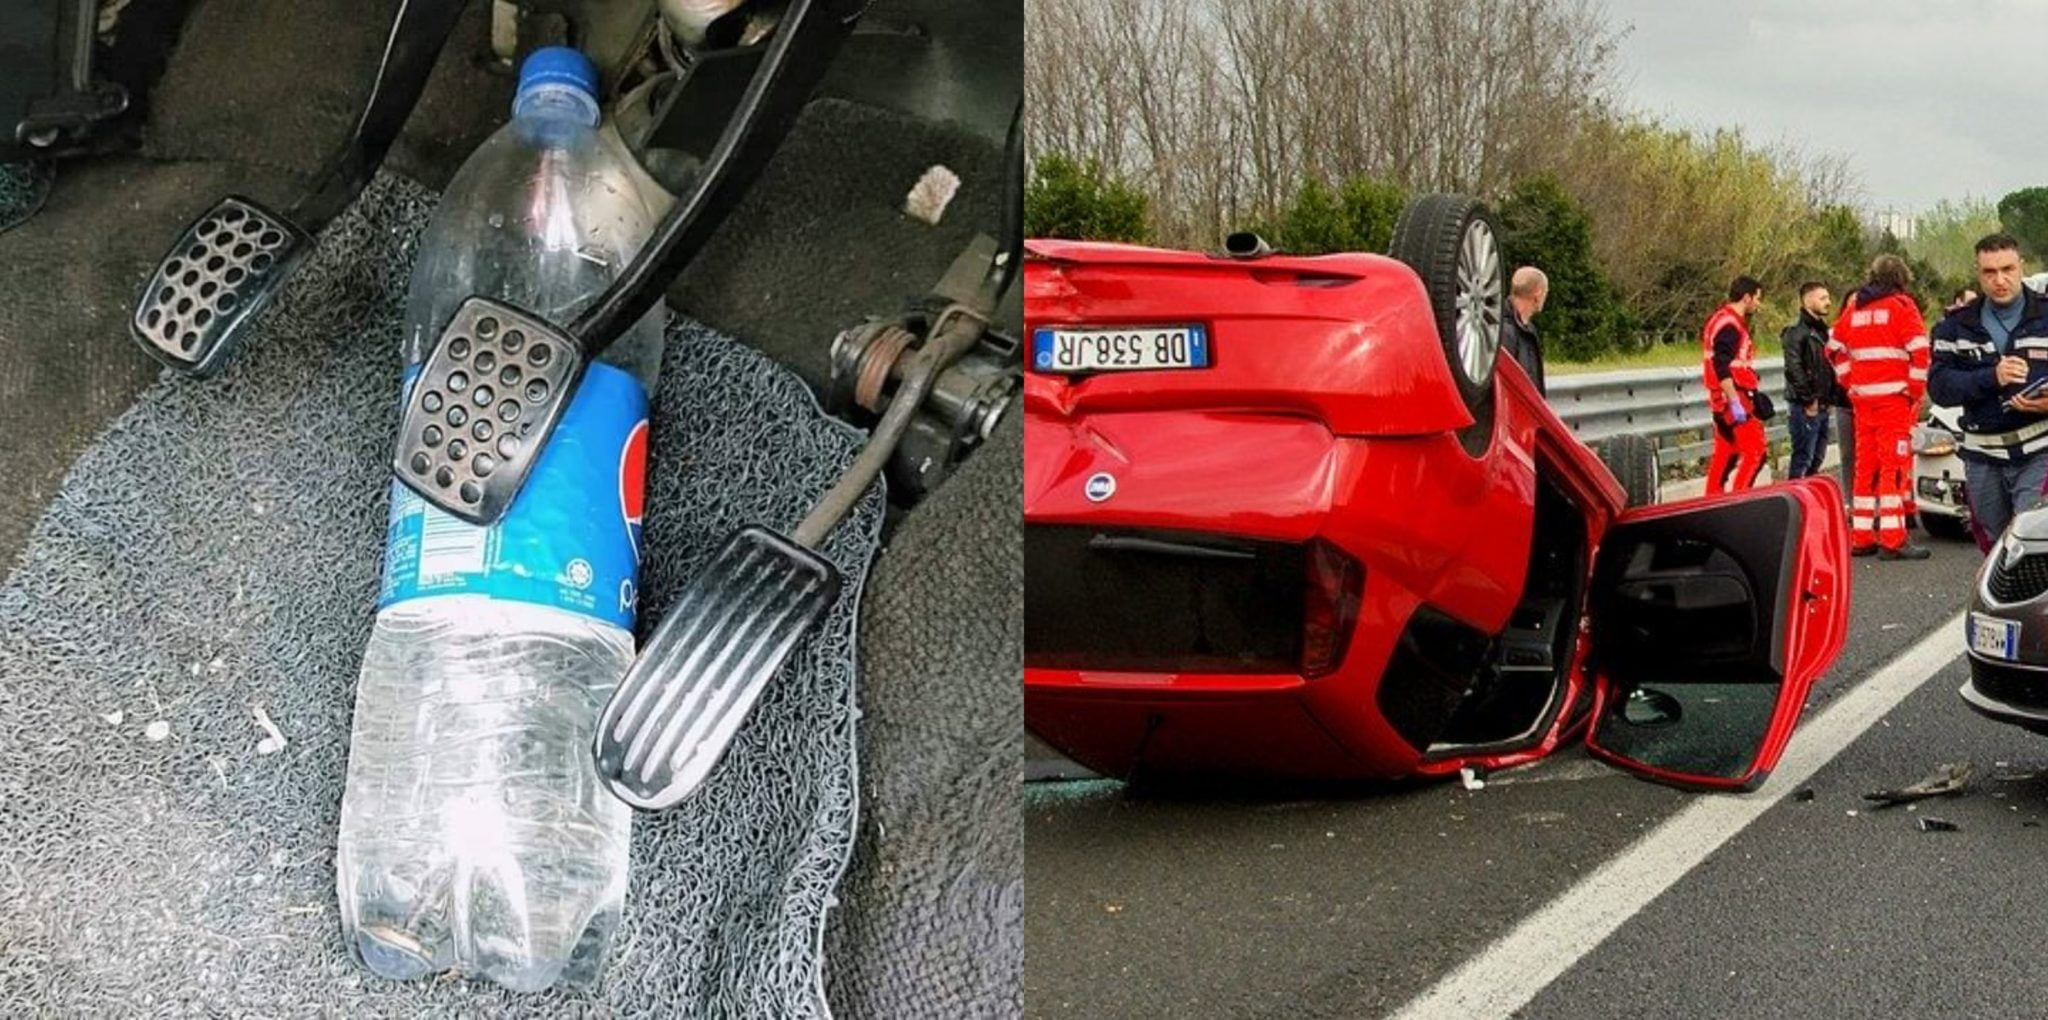 يمكن أن يؤدي الاحتفاظ بزجاجات المياه في السيارة إلى قلب سيارتك